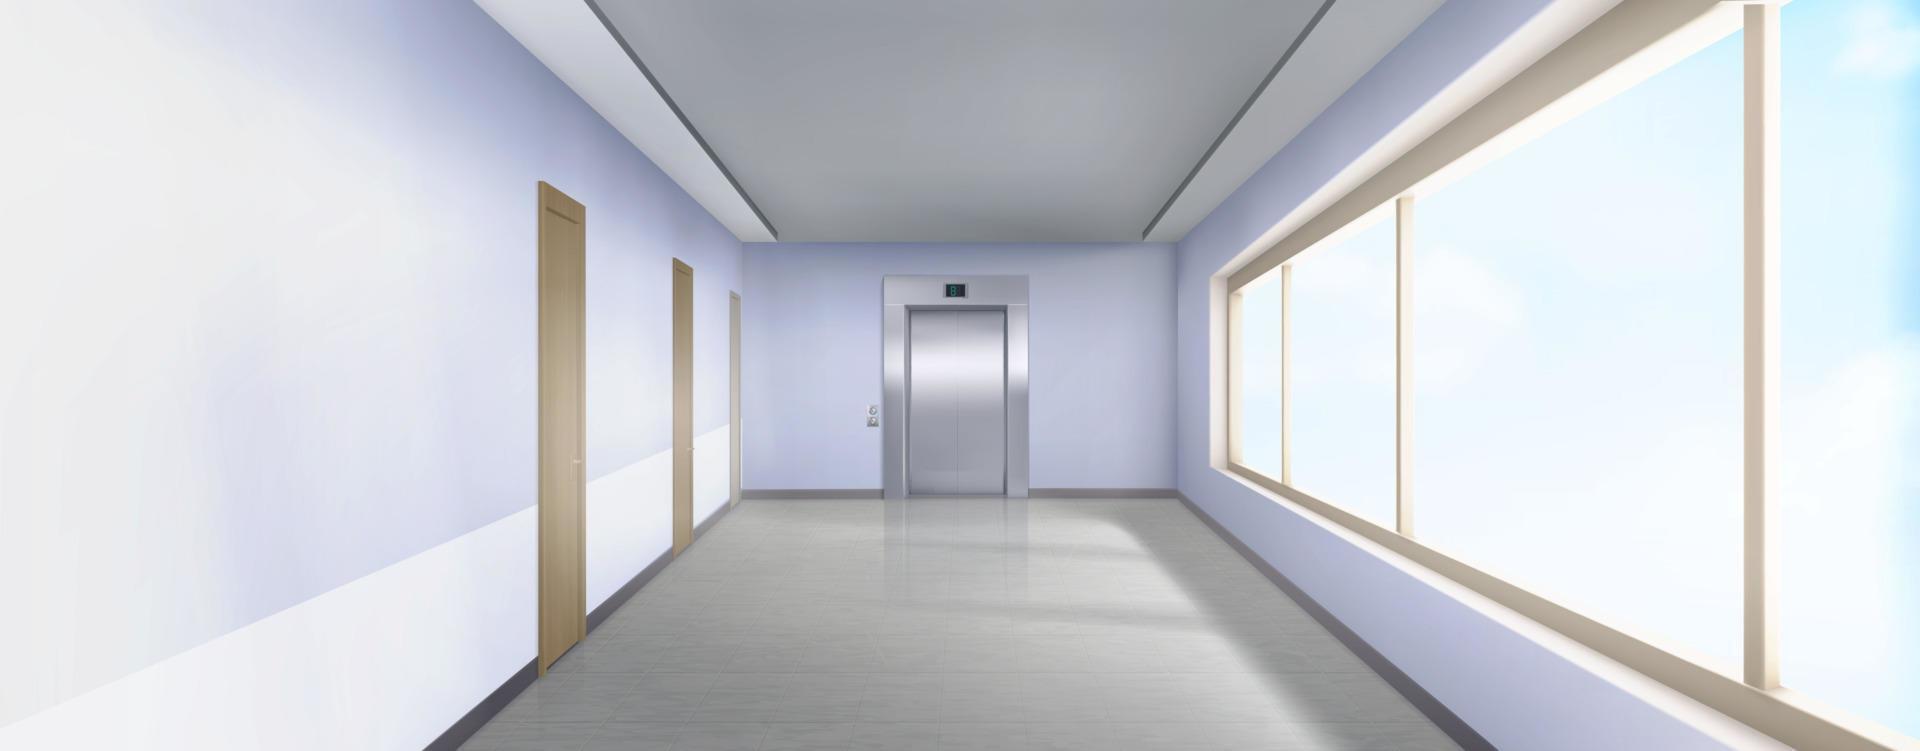 ospedale corridoio interno con ascensore porte vettore